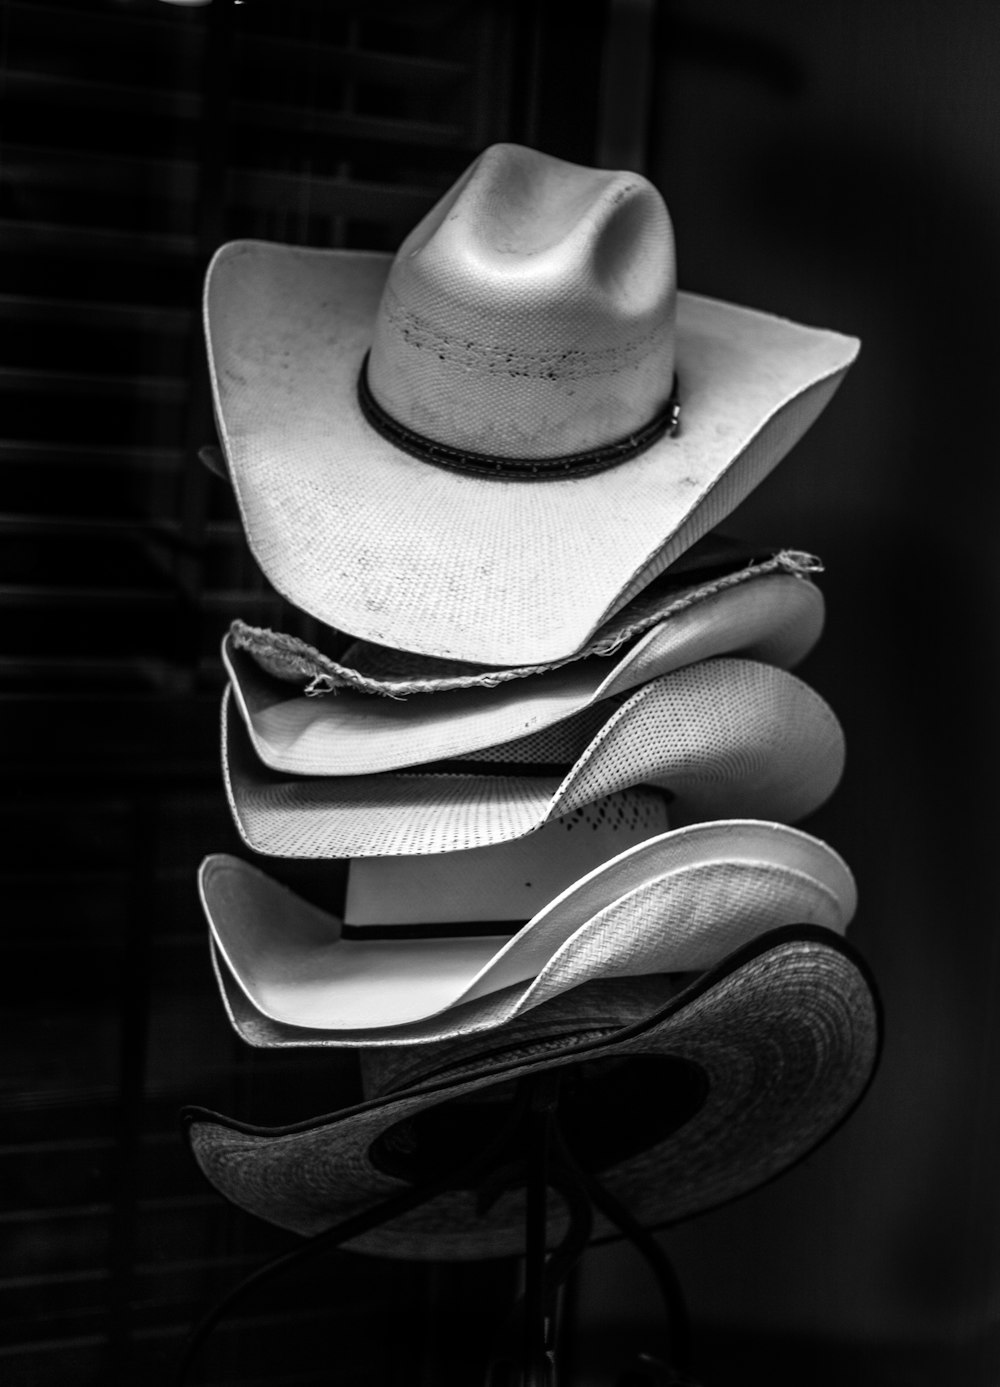 Fotografía en escala de grises de sombreros de vaquero apilados